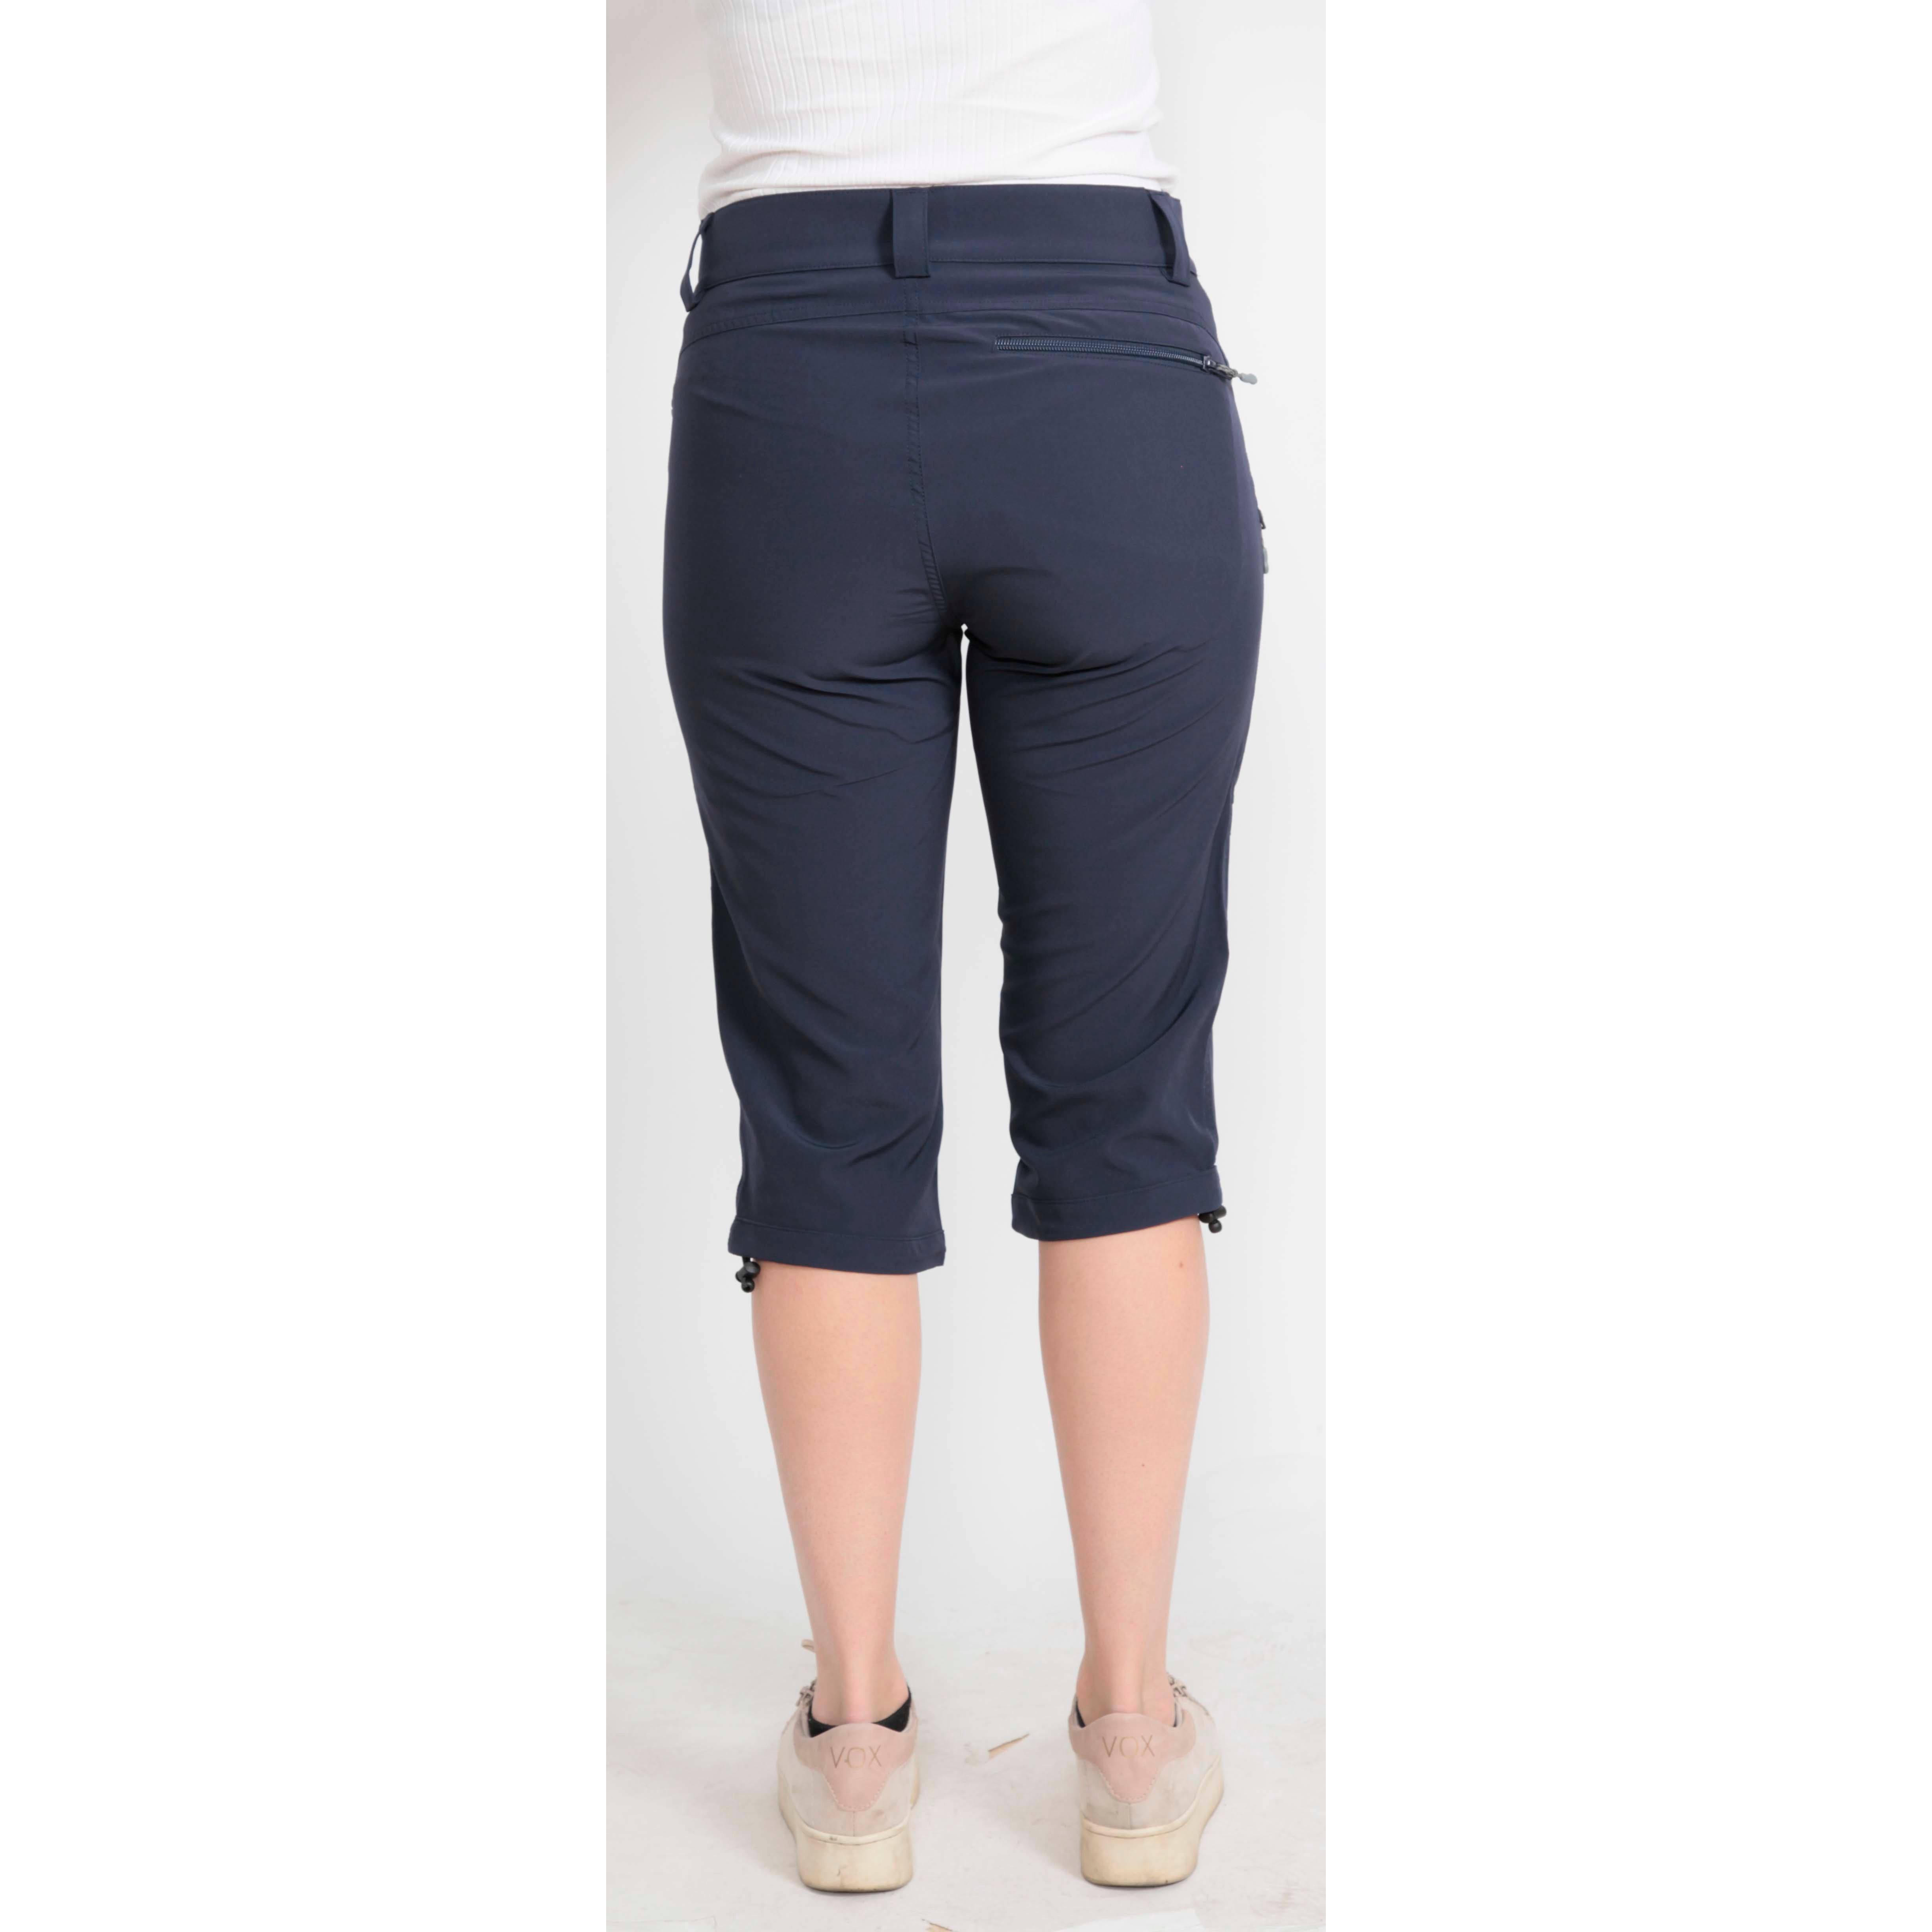 here Outnorth | Shorts | Pants Shorts Pants & & Buy